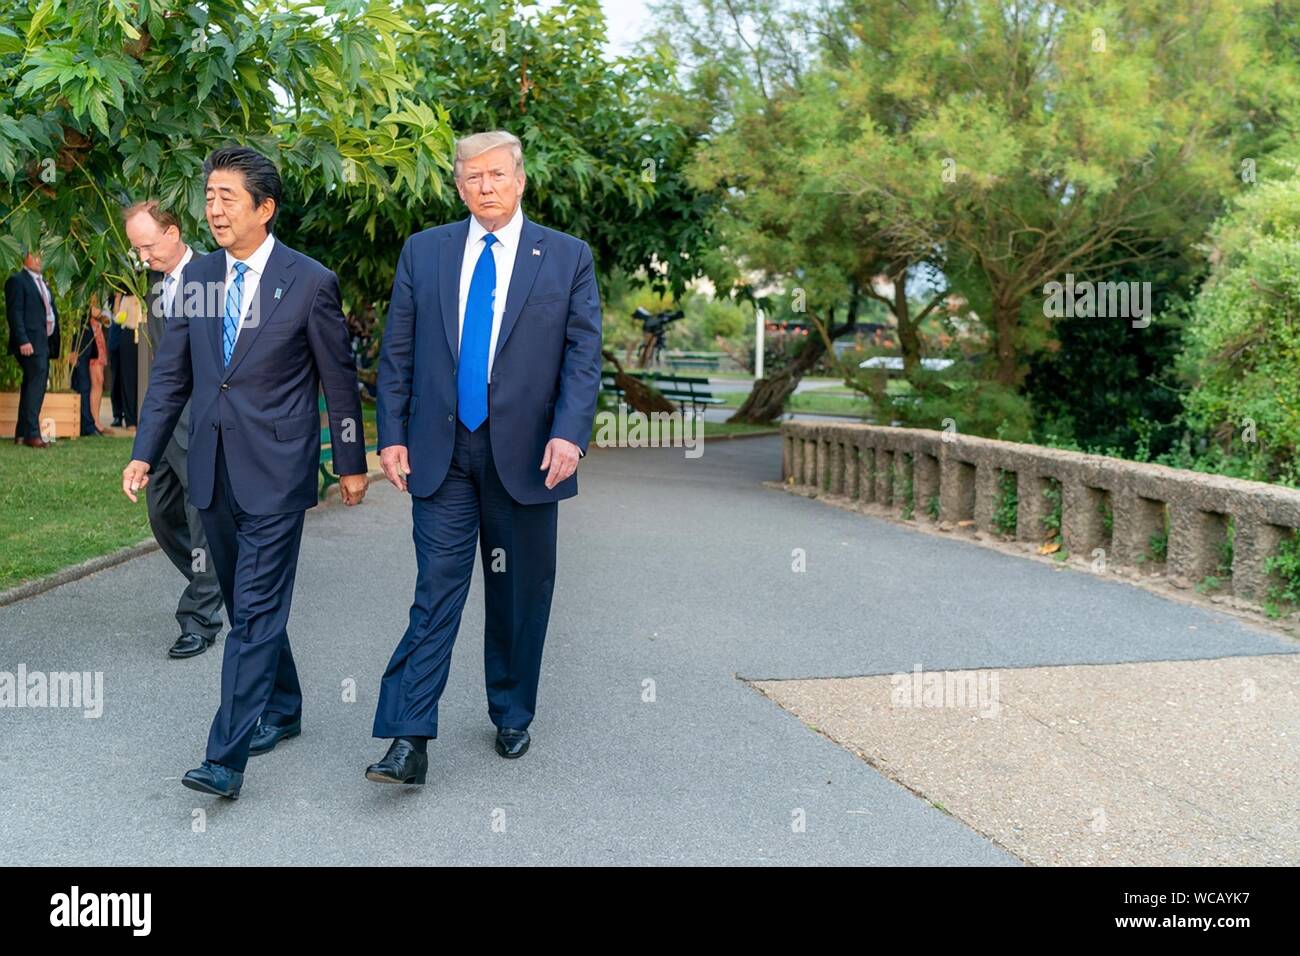 Us-Präsident Donald Trump Spaziergänge mit dem japanischen Premierminister Shinzo Abe, Mitte, während die G7-Führer' Abendessen im Biarritz Leuchtturm August 24, 2019 in Biarritz, Frankreich. Stockfoto